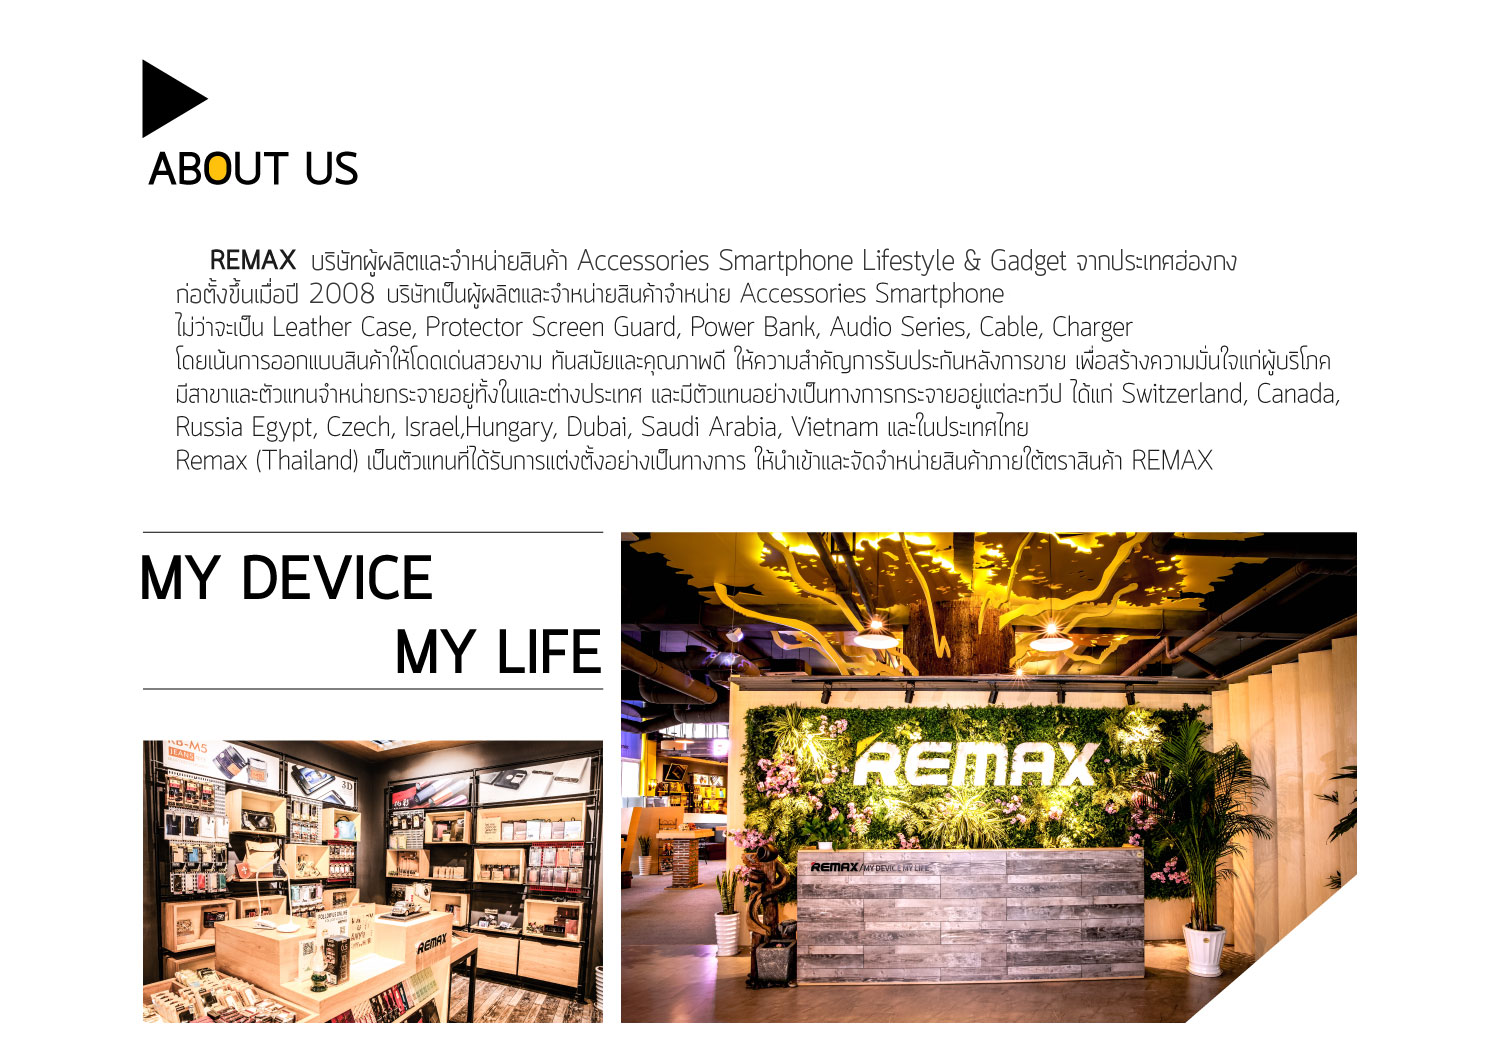 REMAX ก่อตั้งขึ้นในปี 2008 สำนักงานใหญ่ตั้งอยู่เมือง SHENZHEN จาก ประเทศฮ่องกง บริษัทเป็นผู้ผลิตและจำหน่ายสินค้าจำหน่าย Accessories Smartphone ไม่ว่าจะเป็น Leather Case, Protector Screen Guard, Power Bank, Audio Series, Cable, Charger โดยเน้นการออกแบบสินค้าให้โดดเด่นสวยงาม ทันสมัยและคุณภาพดี ให้ความสำคัญการรับประกันหลังการขาย เพื่อสร้างความมั่นใจแก่ผู้บริโภคมีสาขาและตัวแทนจำหน่ายกระจายอยู่ทั้งในและต่างประเทศ และมีตัวแทนอย่างเป็นทางการกระจายอยู่แต่ละทวีป ได้แก่ Switzerland, Canada, Russia Egypt, Czech, Israel,Hungary, Dubai, Saudi Arabia, Vietnam และในประเทศไทย Remax (Thailand) เป็นตัวแทนที่ได้รับการแต่งตั้งอย่างเป็นทางการ ให้นำเข้าและจัดจำหน่ายสินค้าภายใต้ตราสินค้า REMAX